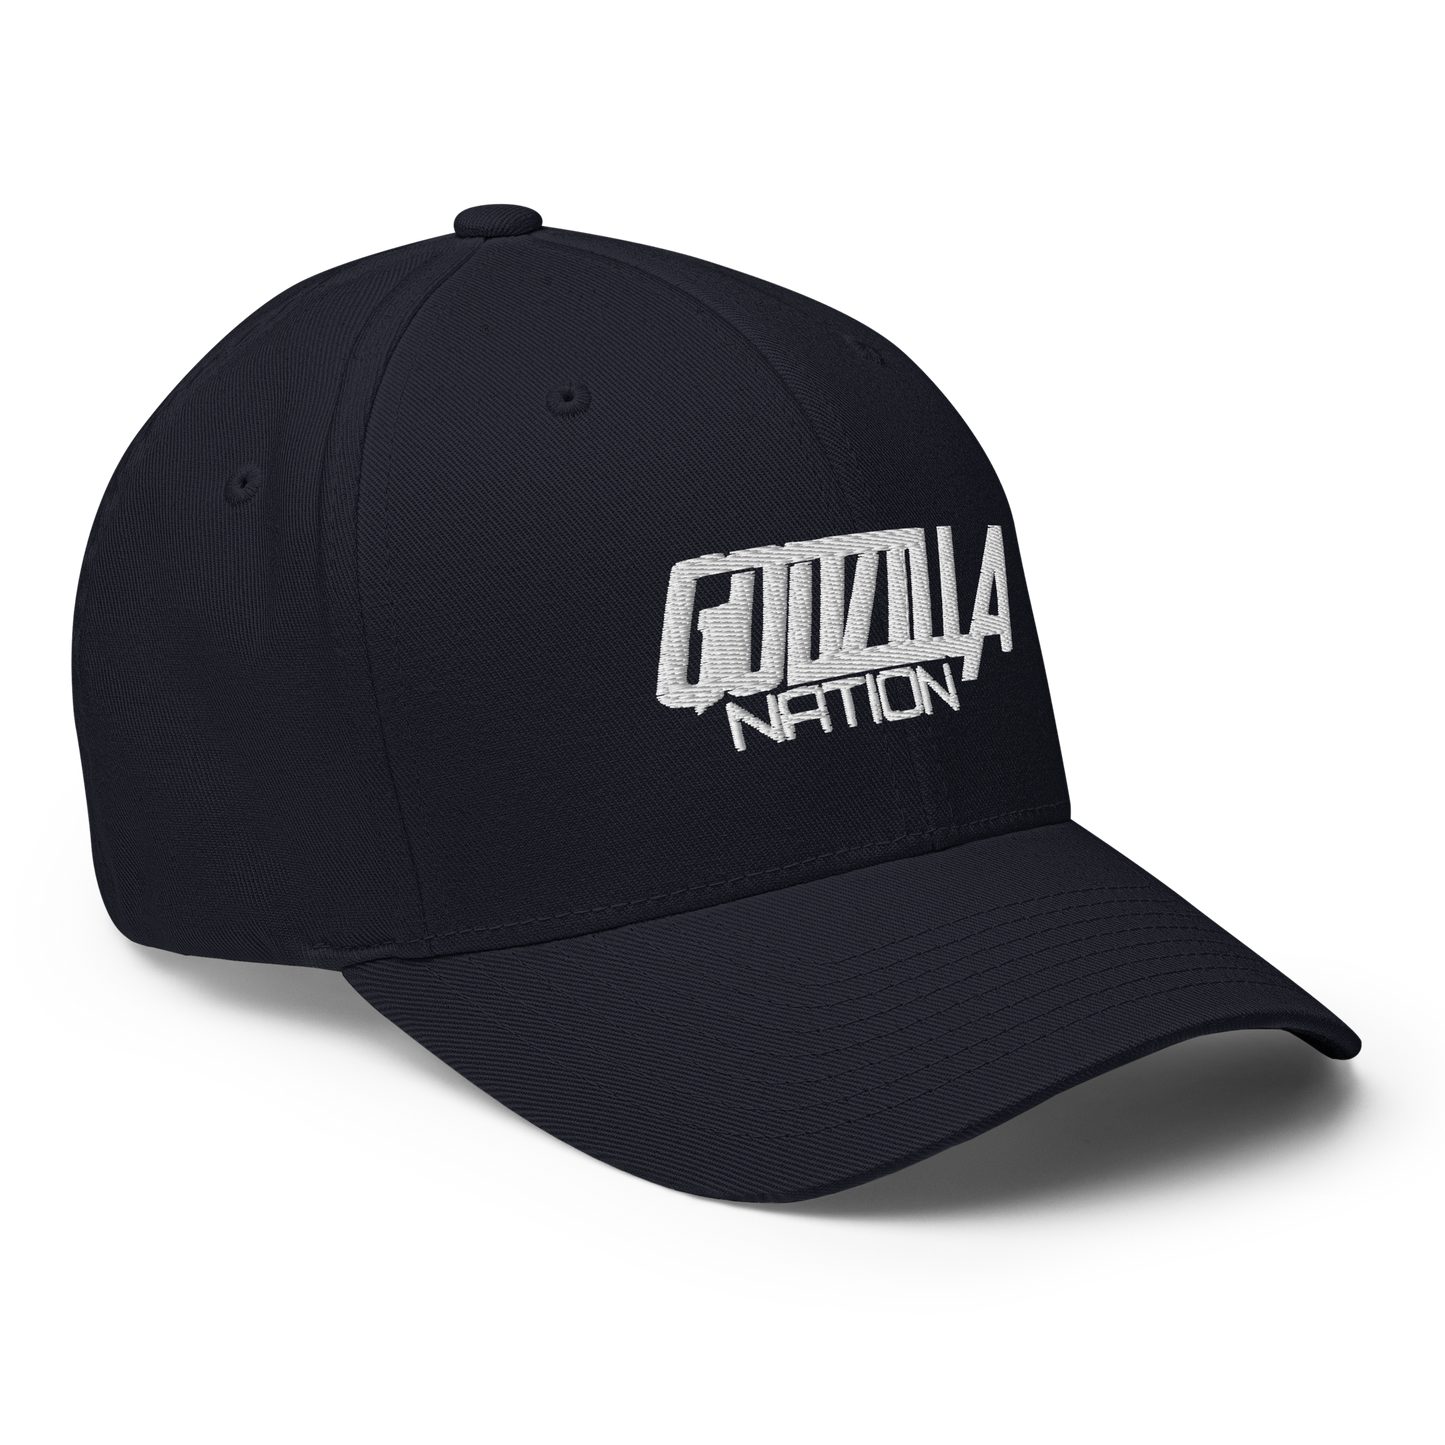 GODZILLA NATION - Flexfit Cap